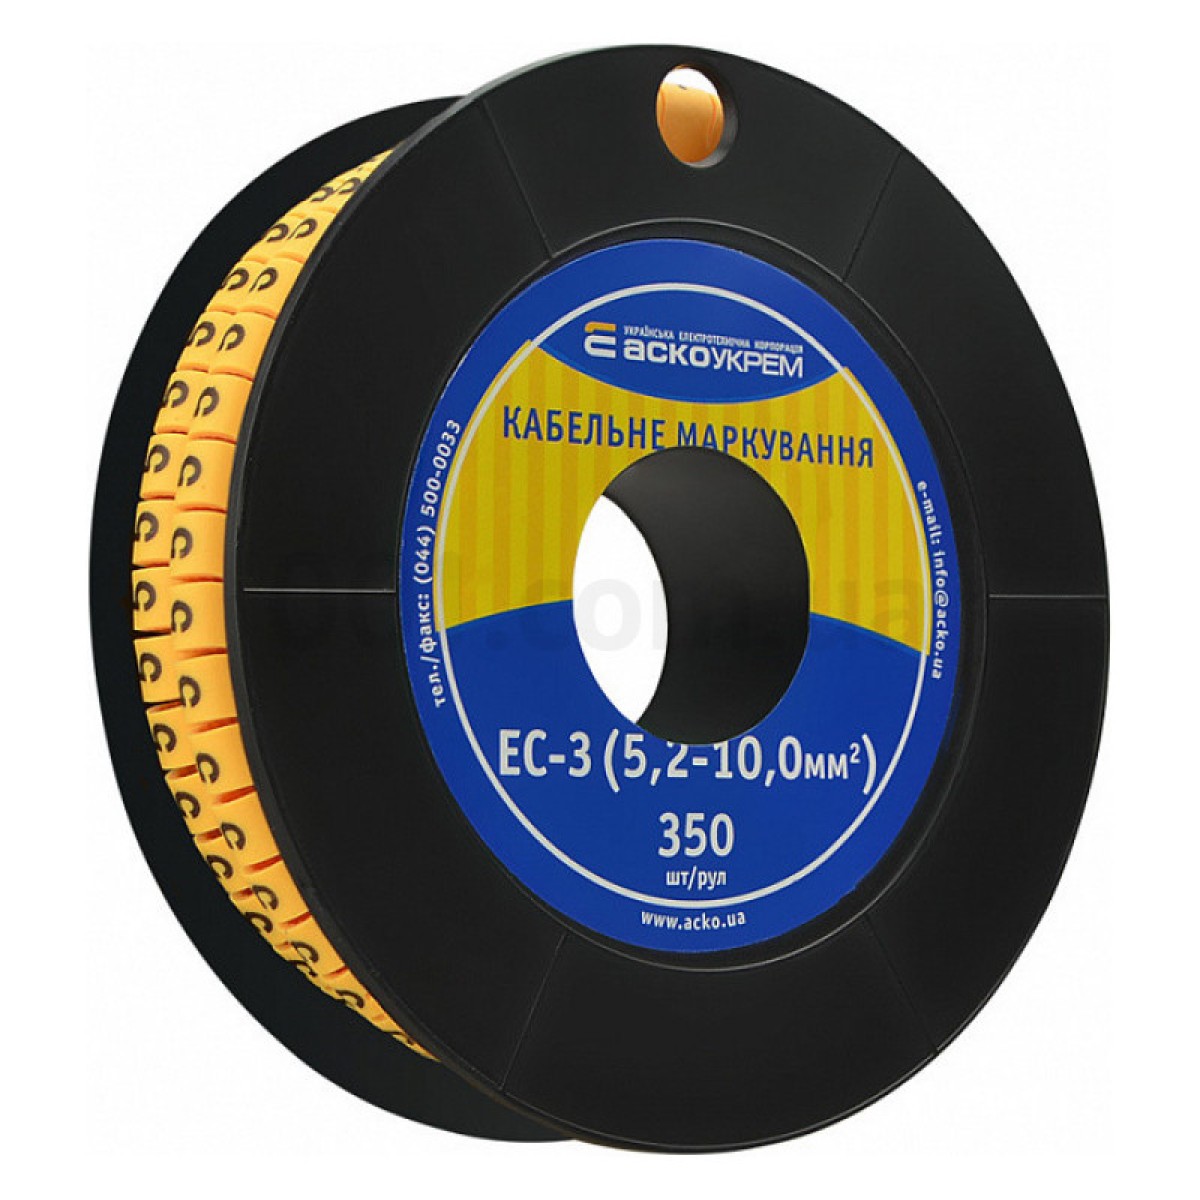 Маркування ЕС-3 для кабелю 5,2-10,0 мм² символ «5» (рулон 250 шт.), АСКО-УКРЕМ 98_98.jpg - фото 1